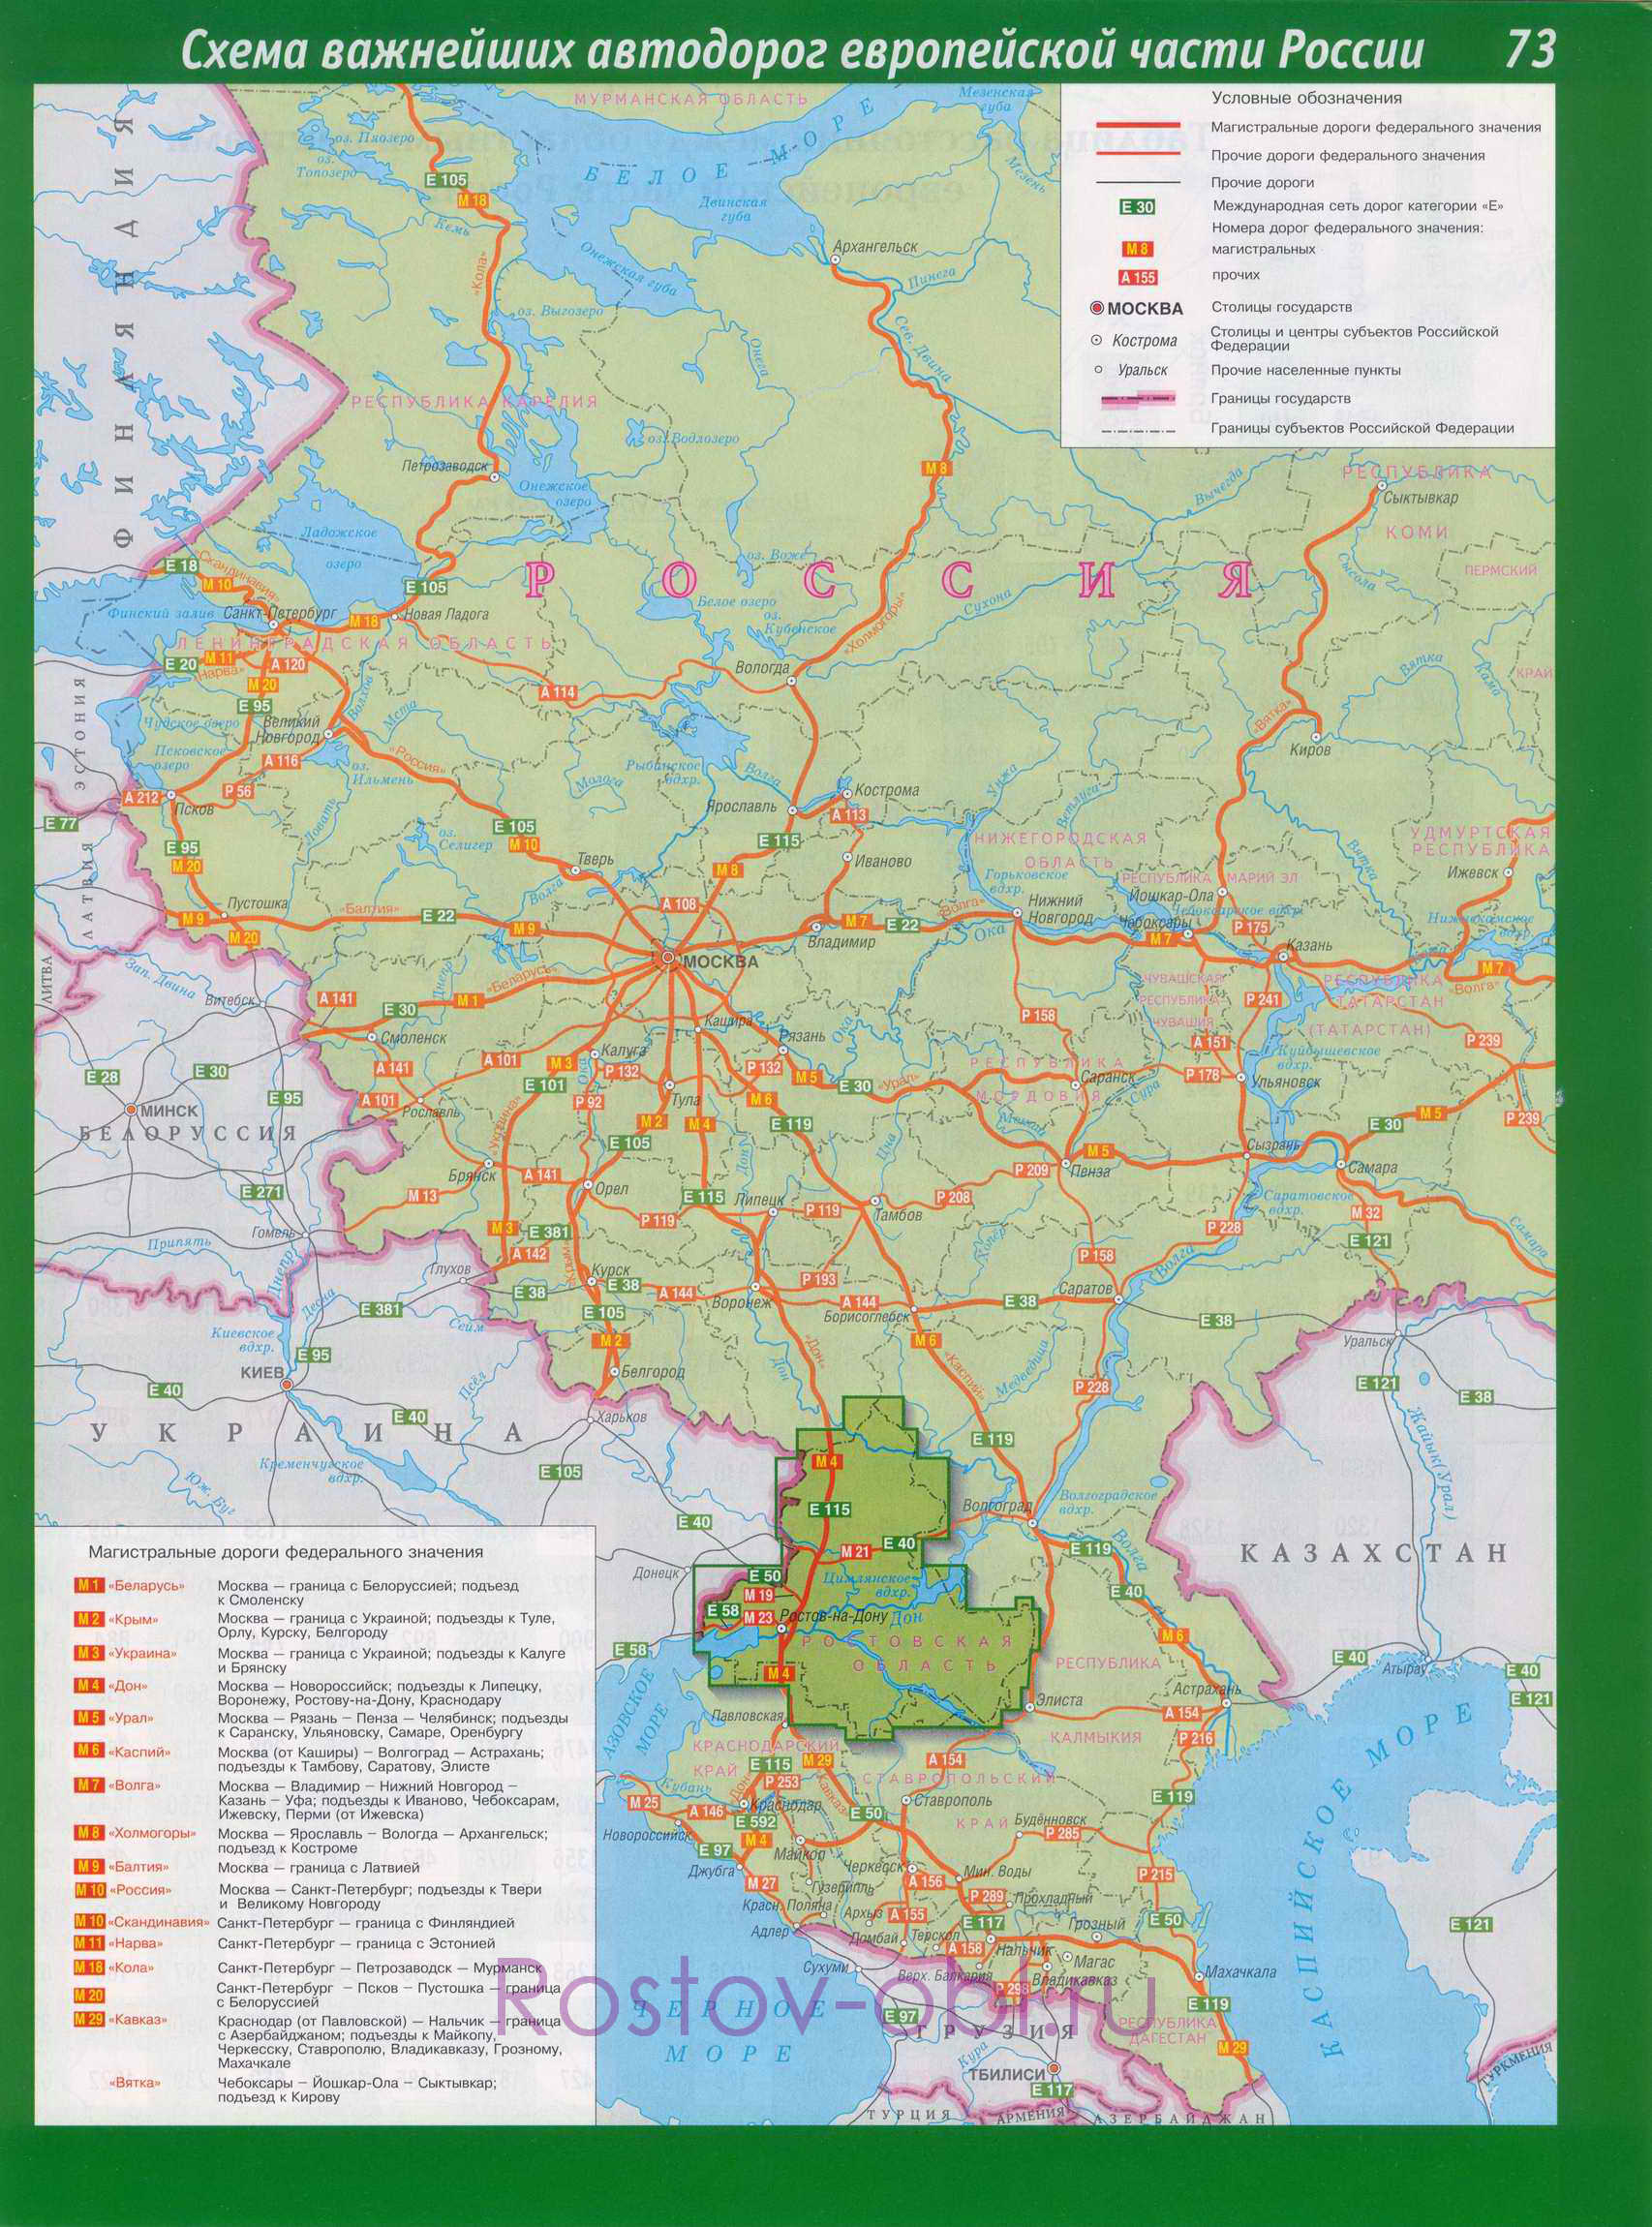  Карта юга России. Карта автомобильных трасс европейской части России. Карта магистральных автодорог России федерального значения, A0 - 